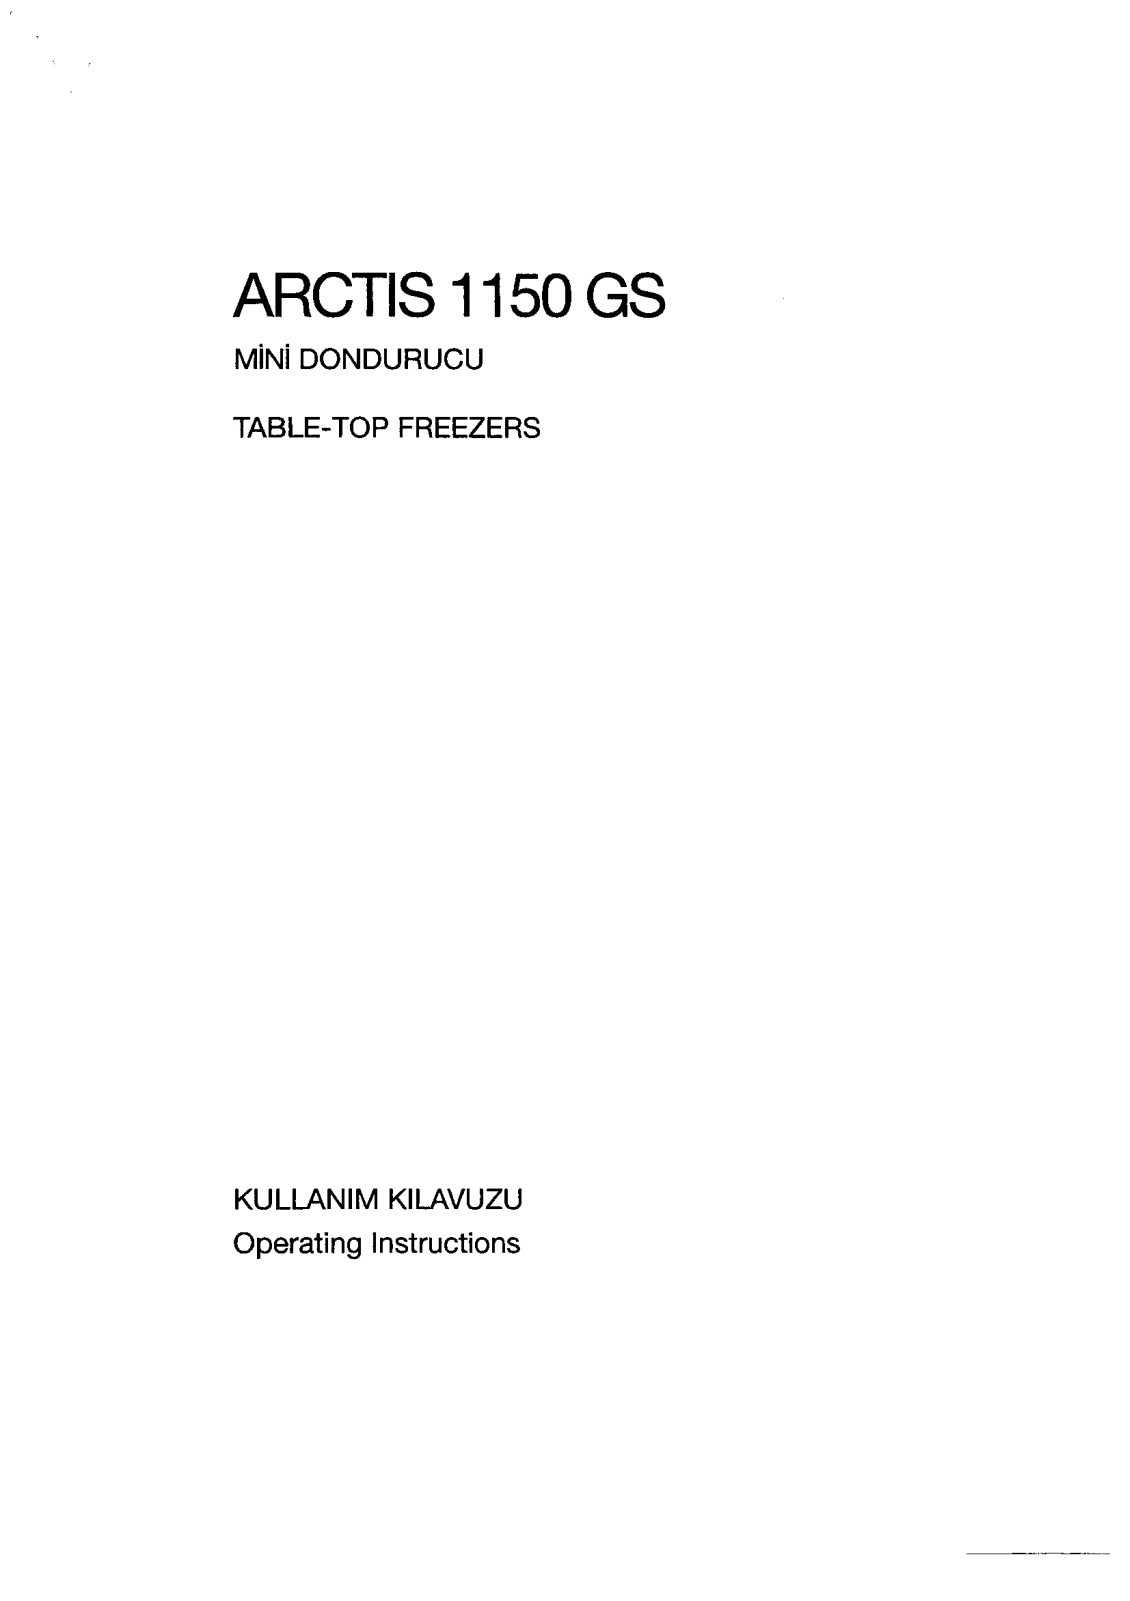 AEG ARCTIS 1150GS Manual